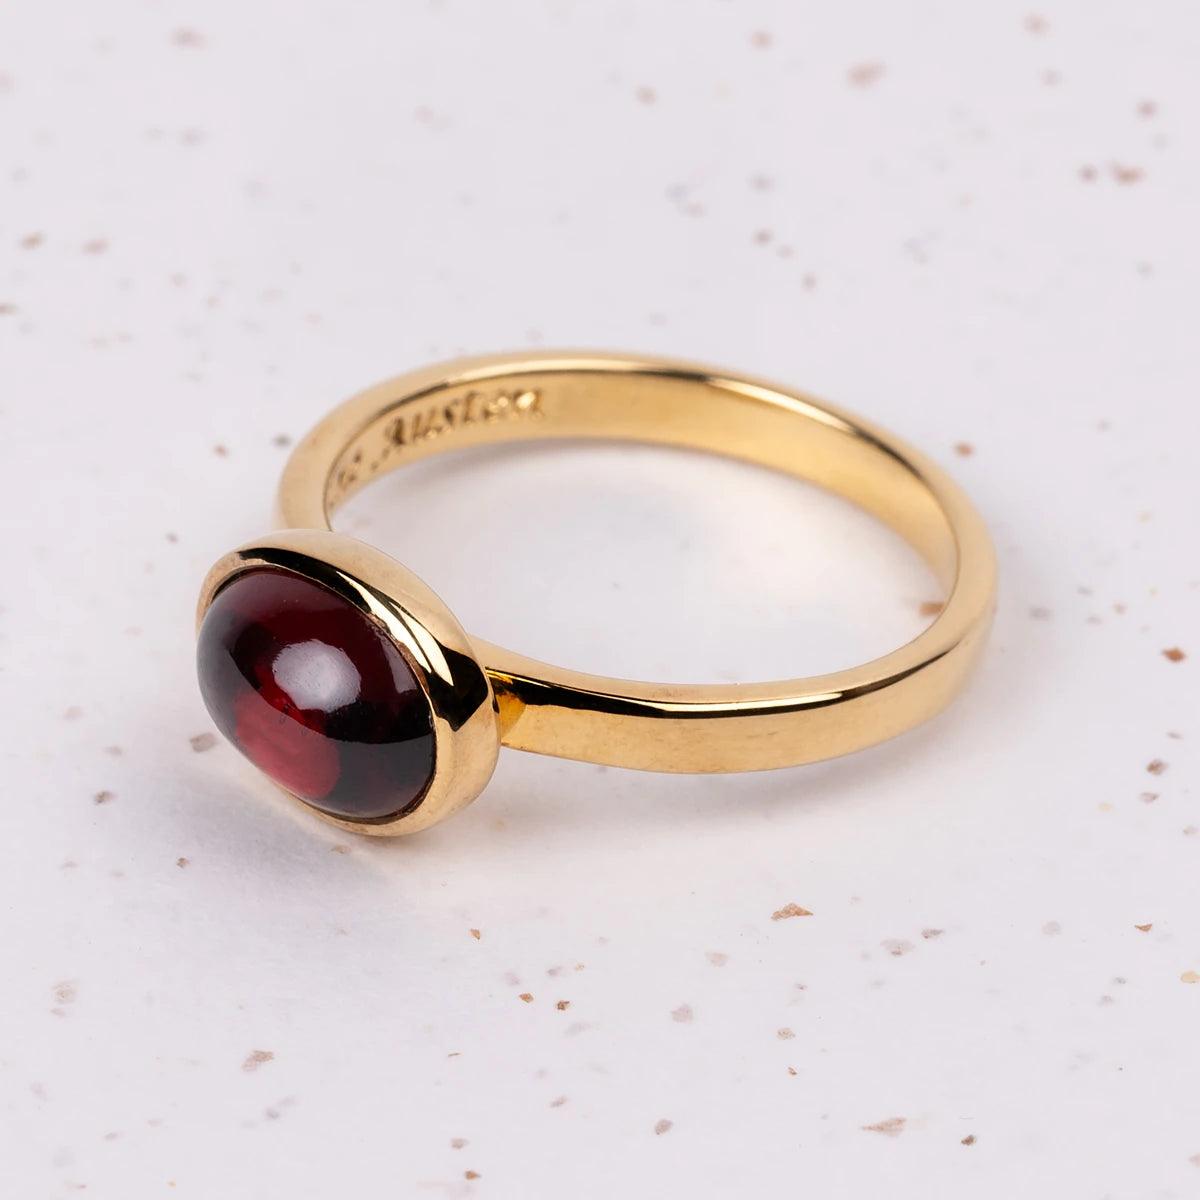 Elizabeth Bennet Gold-Plated Ring - JaneAusten.co.uk